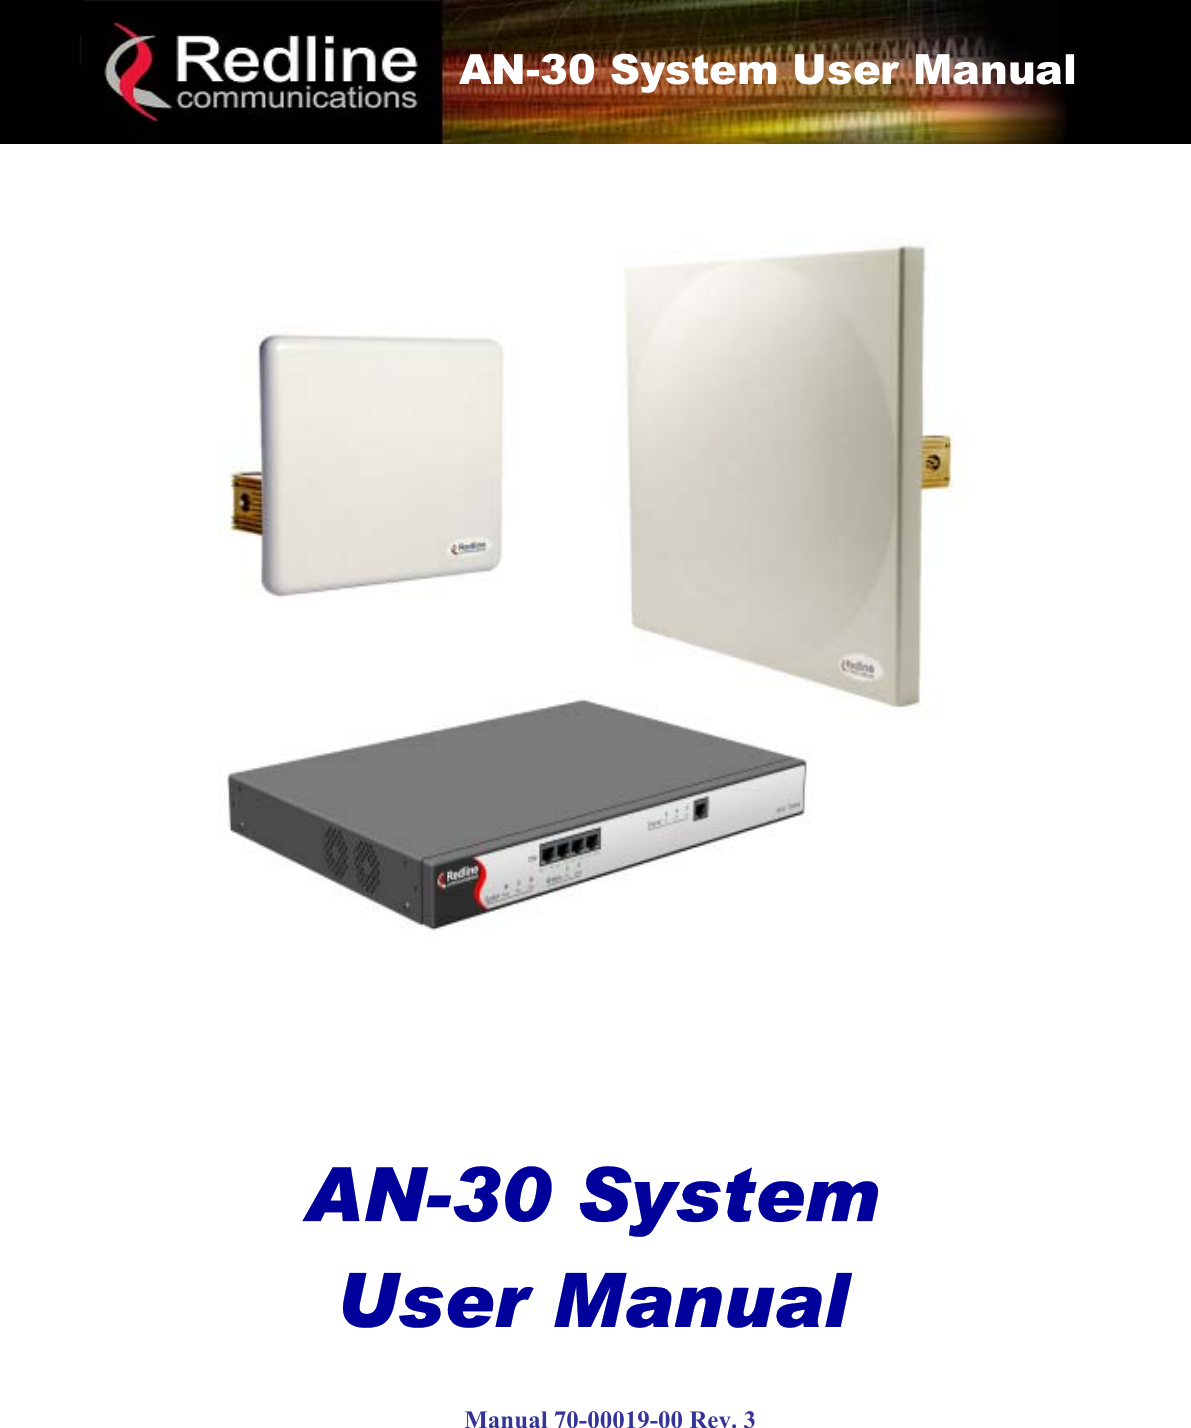     AN-30 System User Manual      AN-30 System User Manual           AN-30 System User Manual   Manual 70-00019-00 Rev. 3 